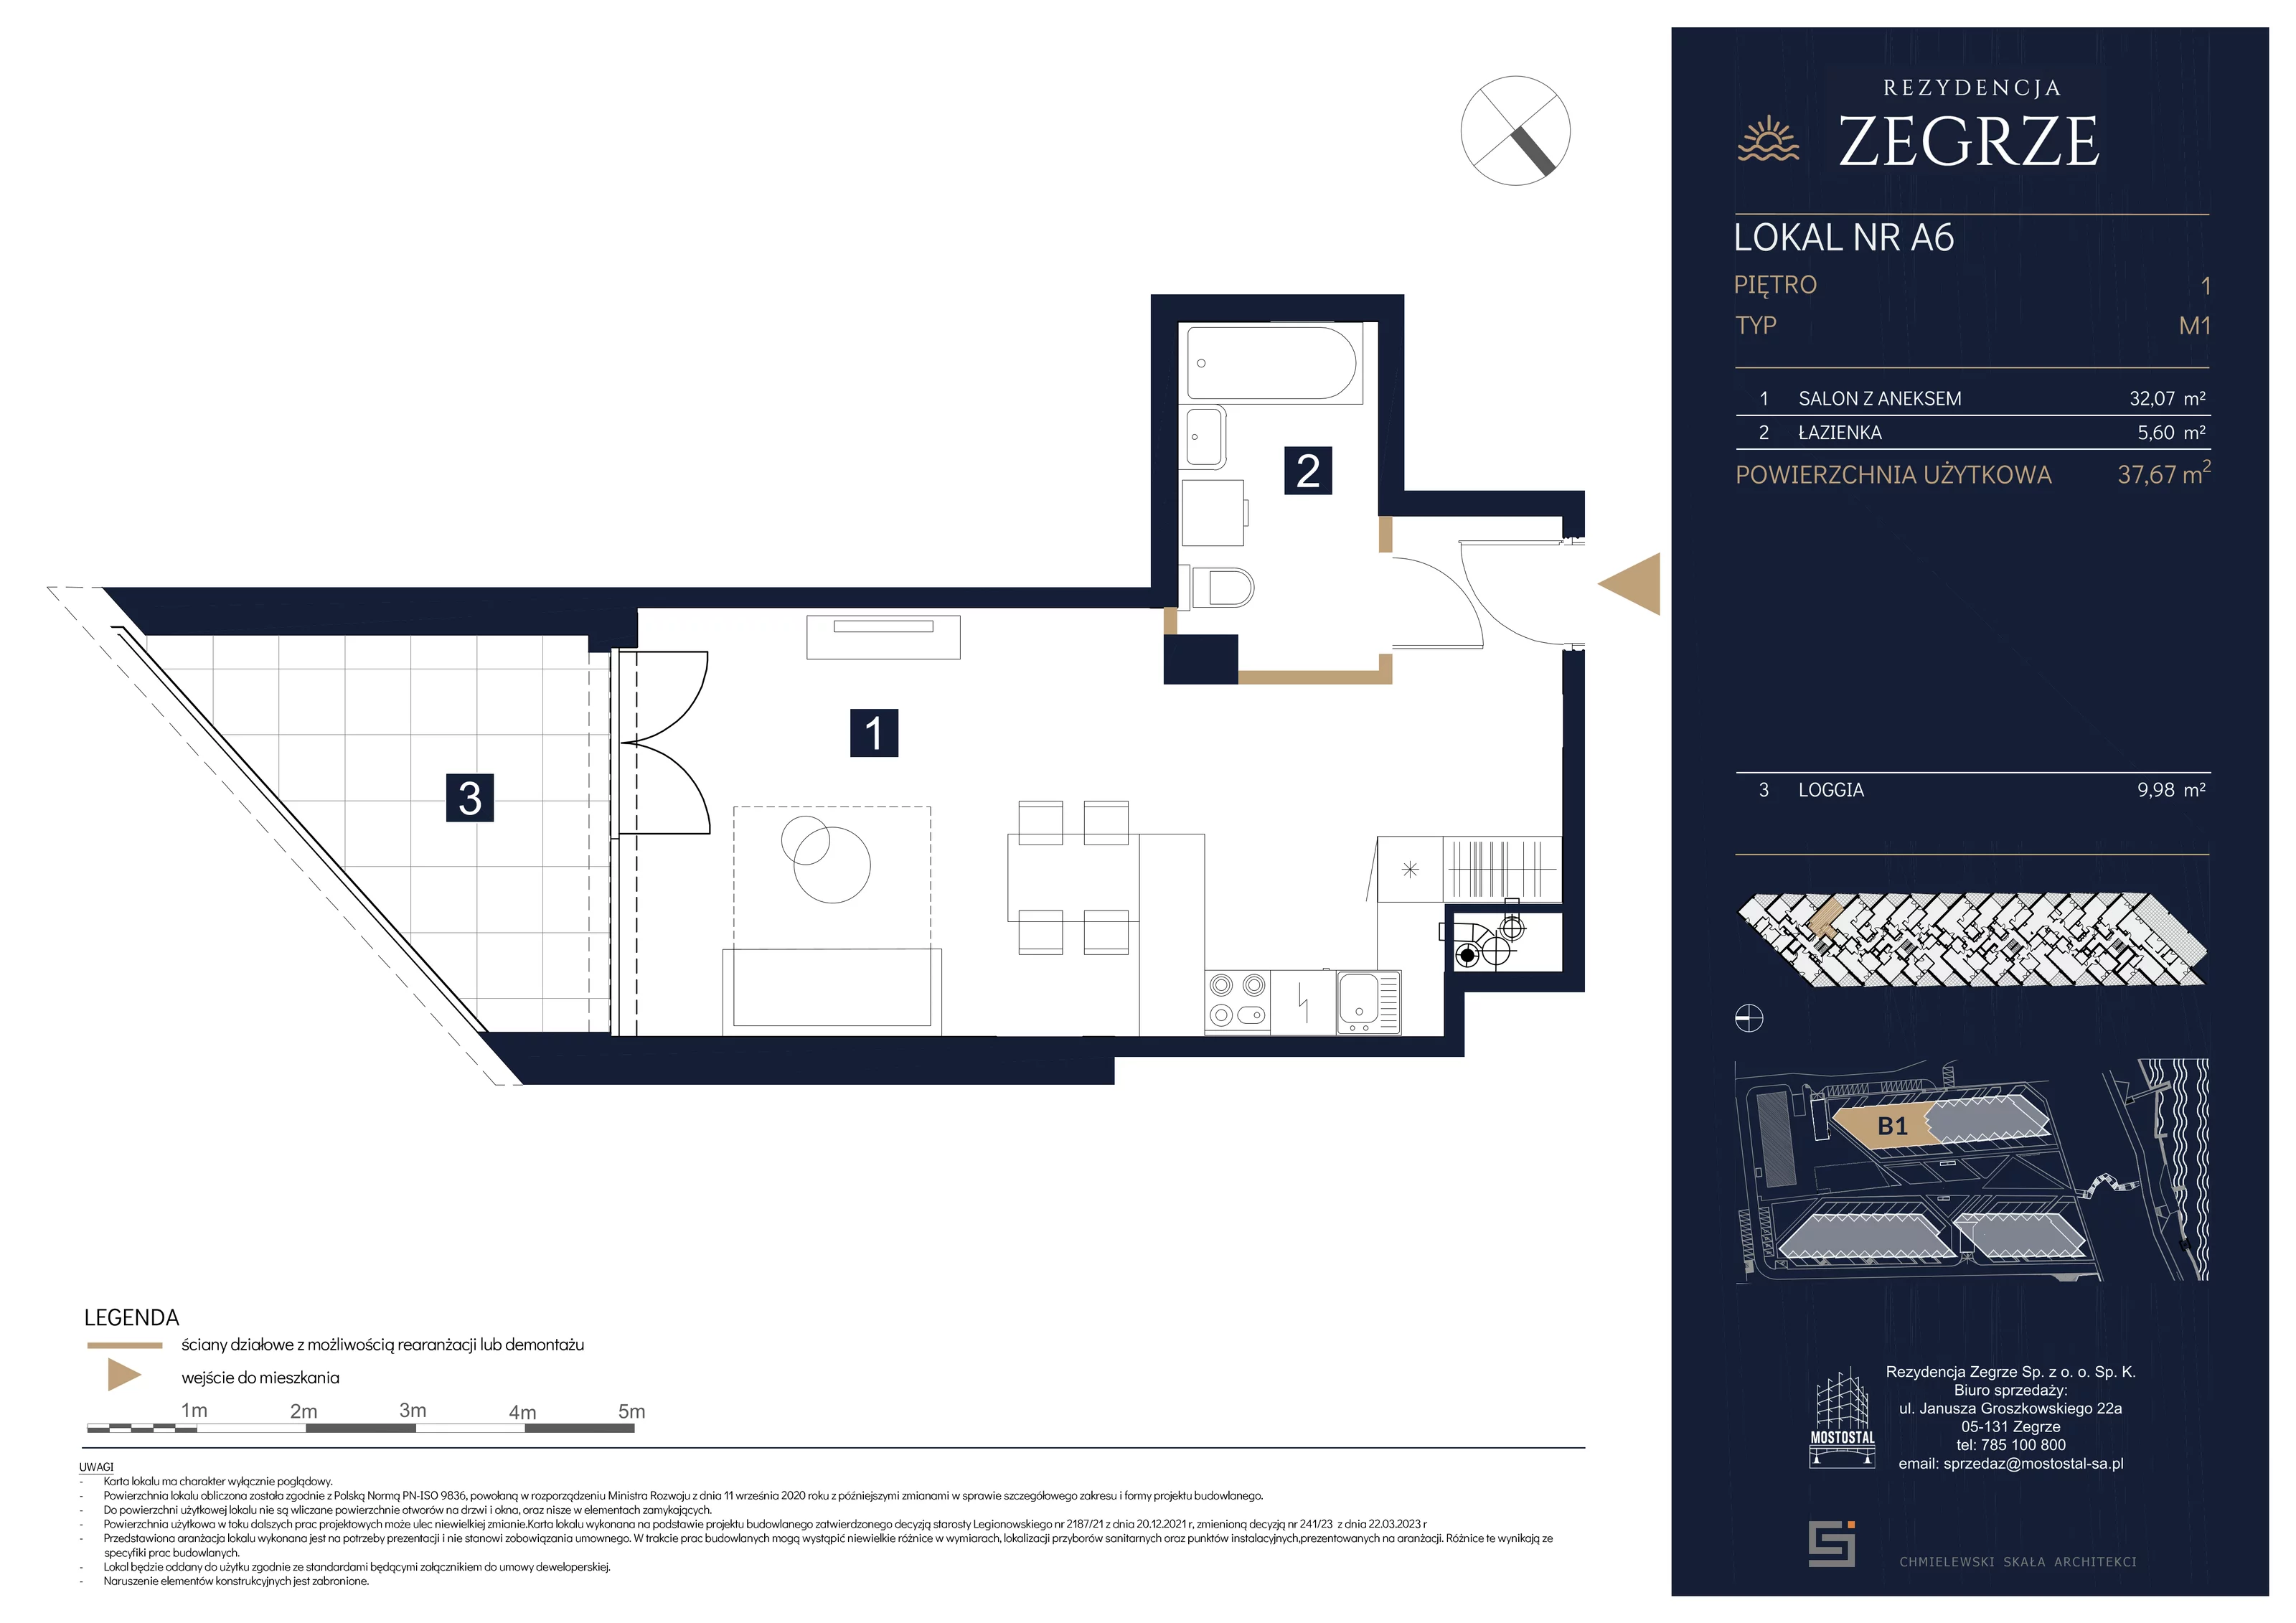 Mieszkanie 37,67 m², piętro 1, oferta nr B1.2.A.6, Rezydencja Zegrze II, Zegrze, ul. Groszkowskiego 22A